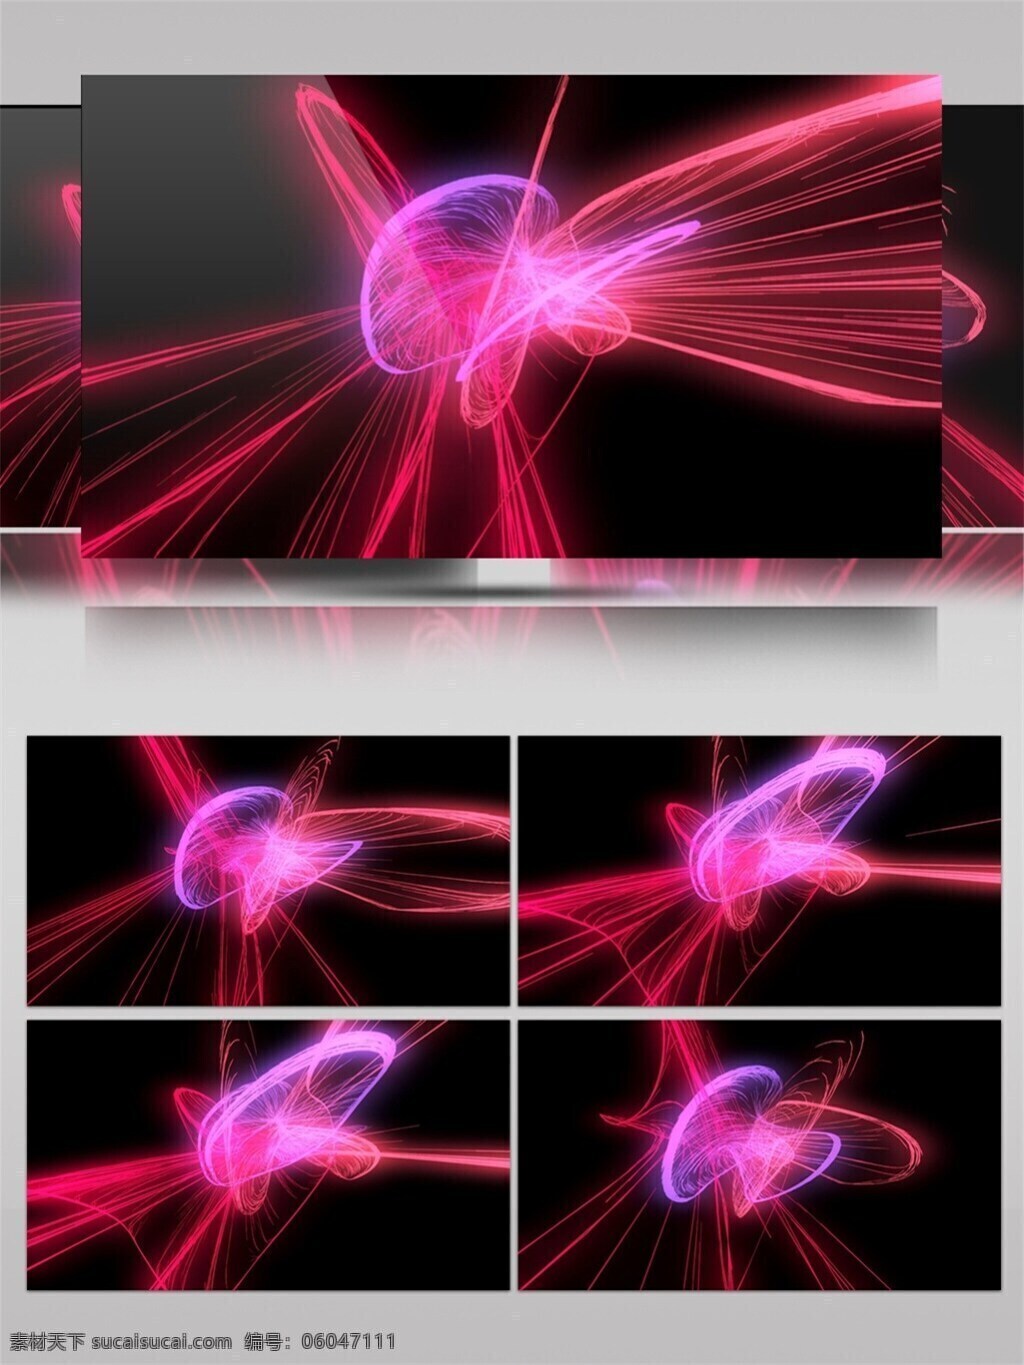 紫色 梦幻 光环 视频 光斑散射 光束 红色 视觉享受 手机壁纸